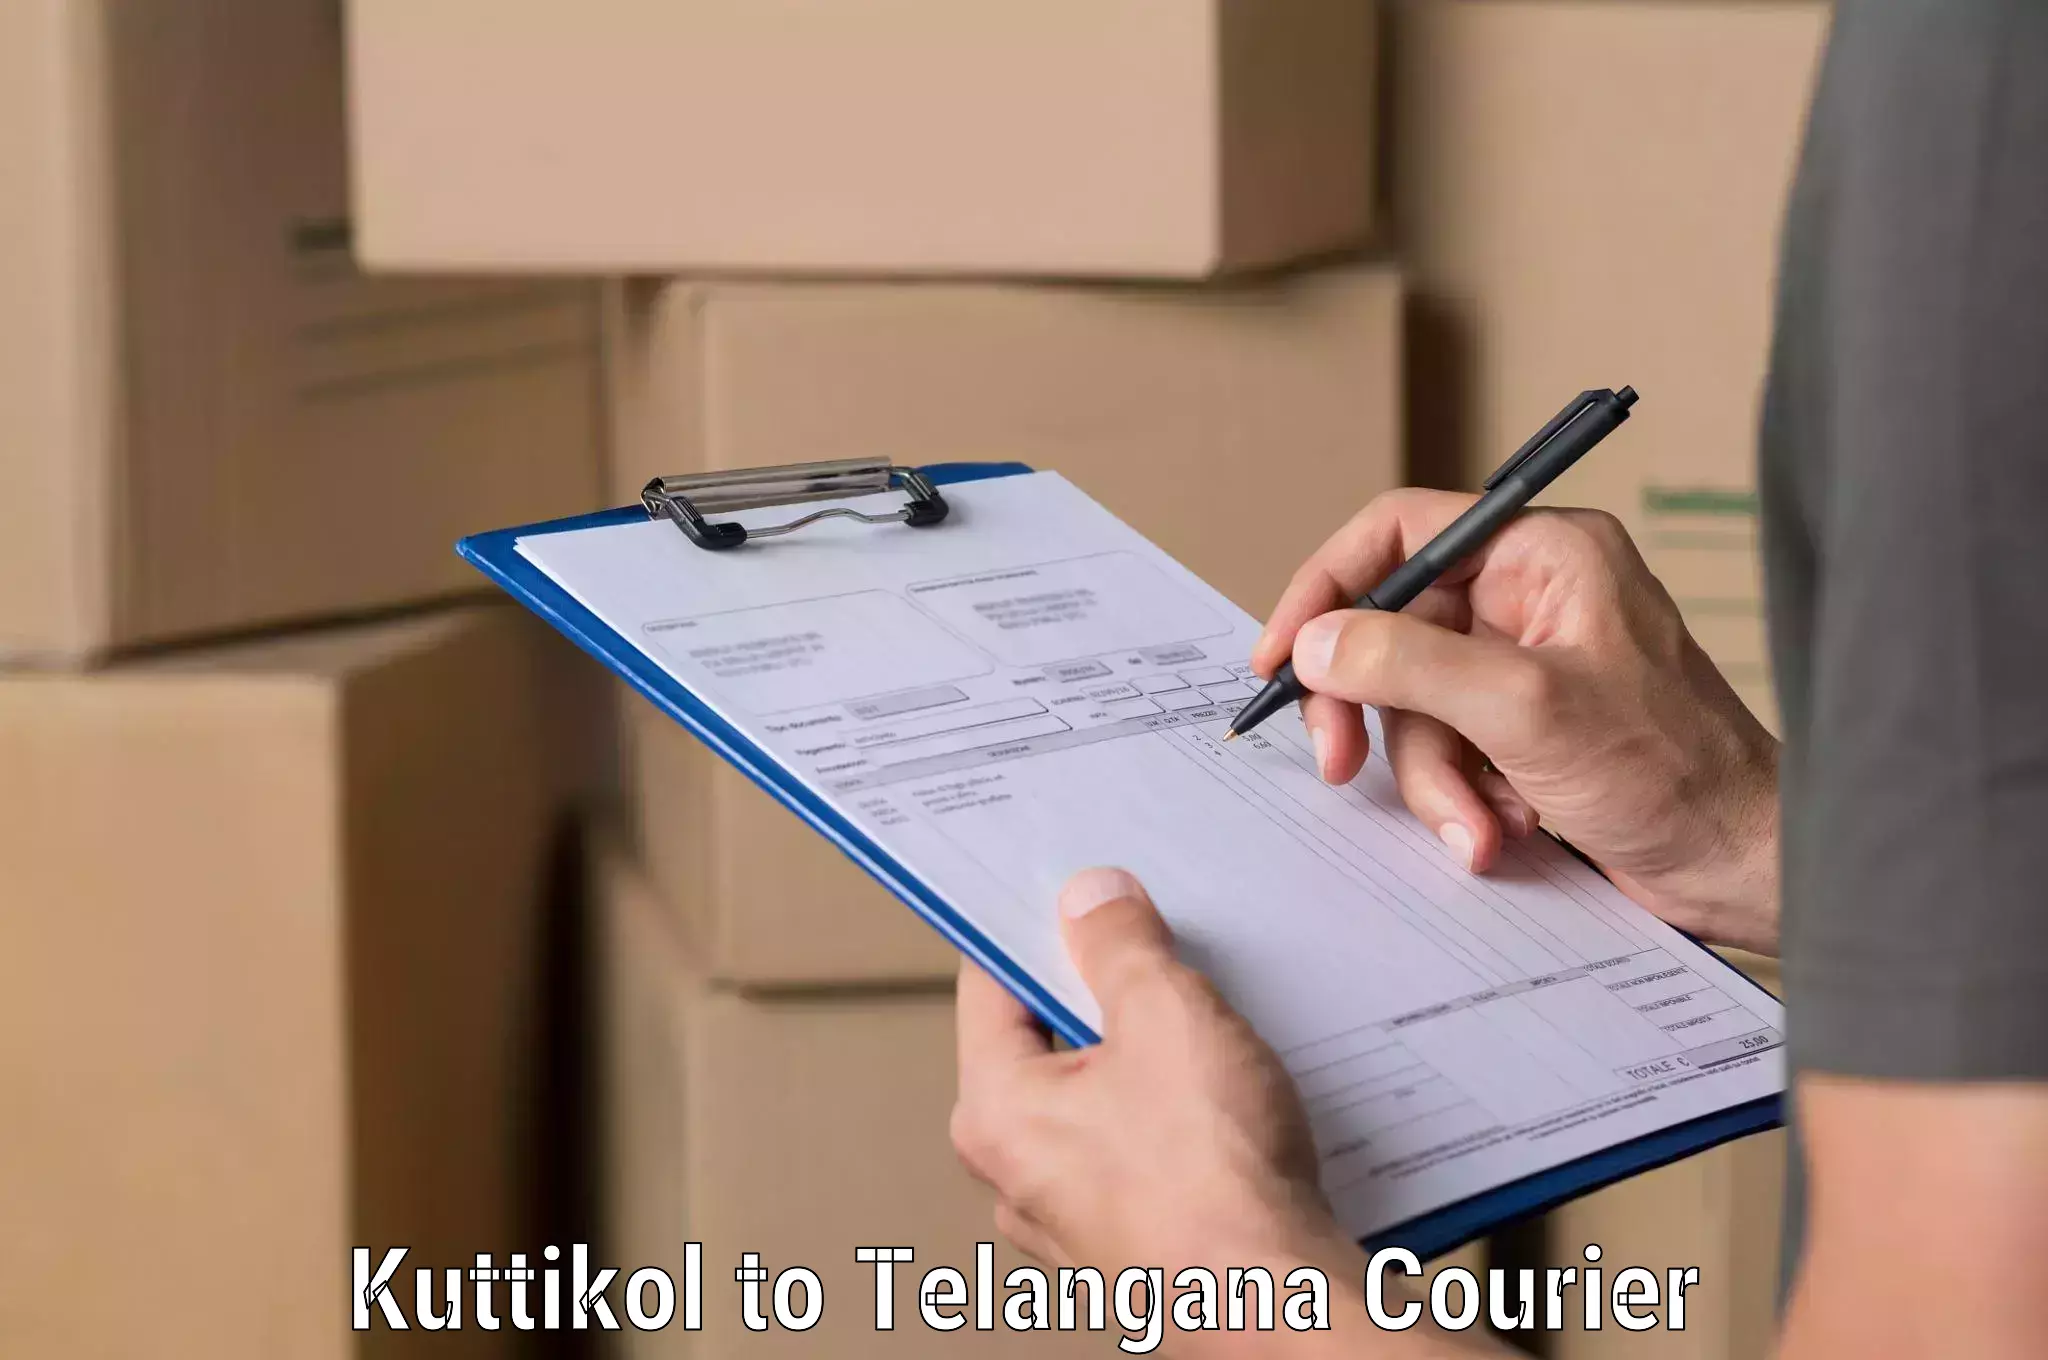 Rapid freight solutions Kuttikol to Kamalapur